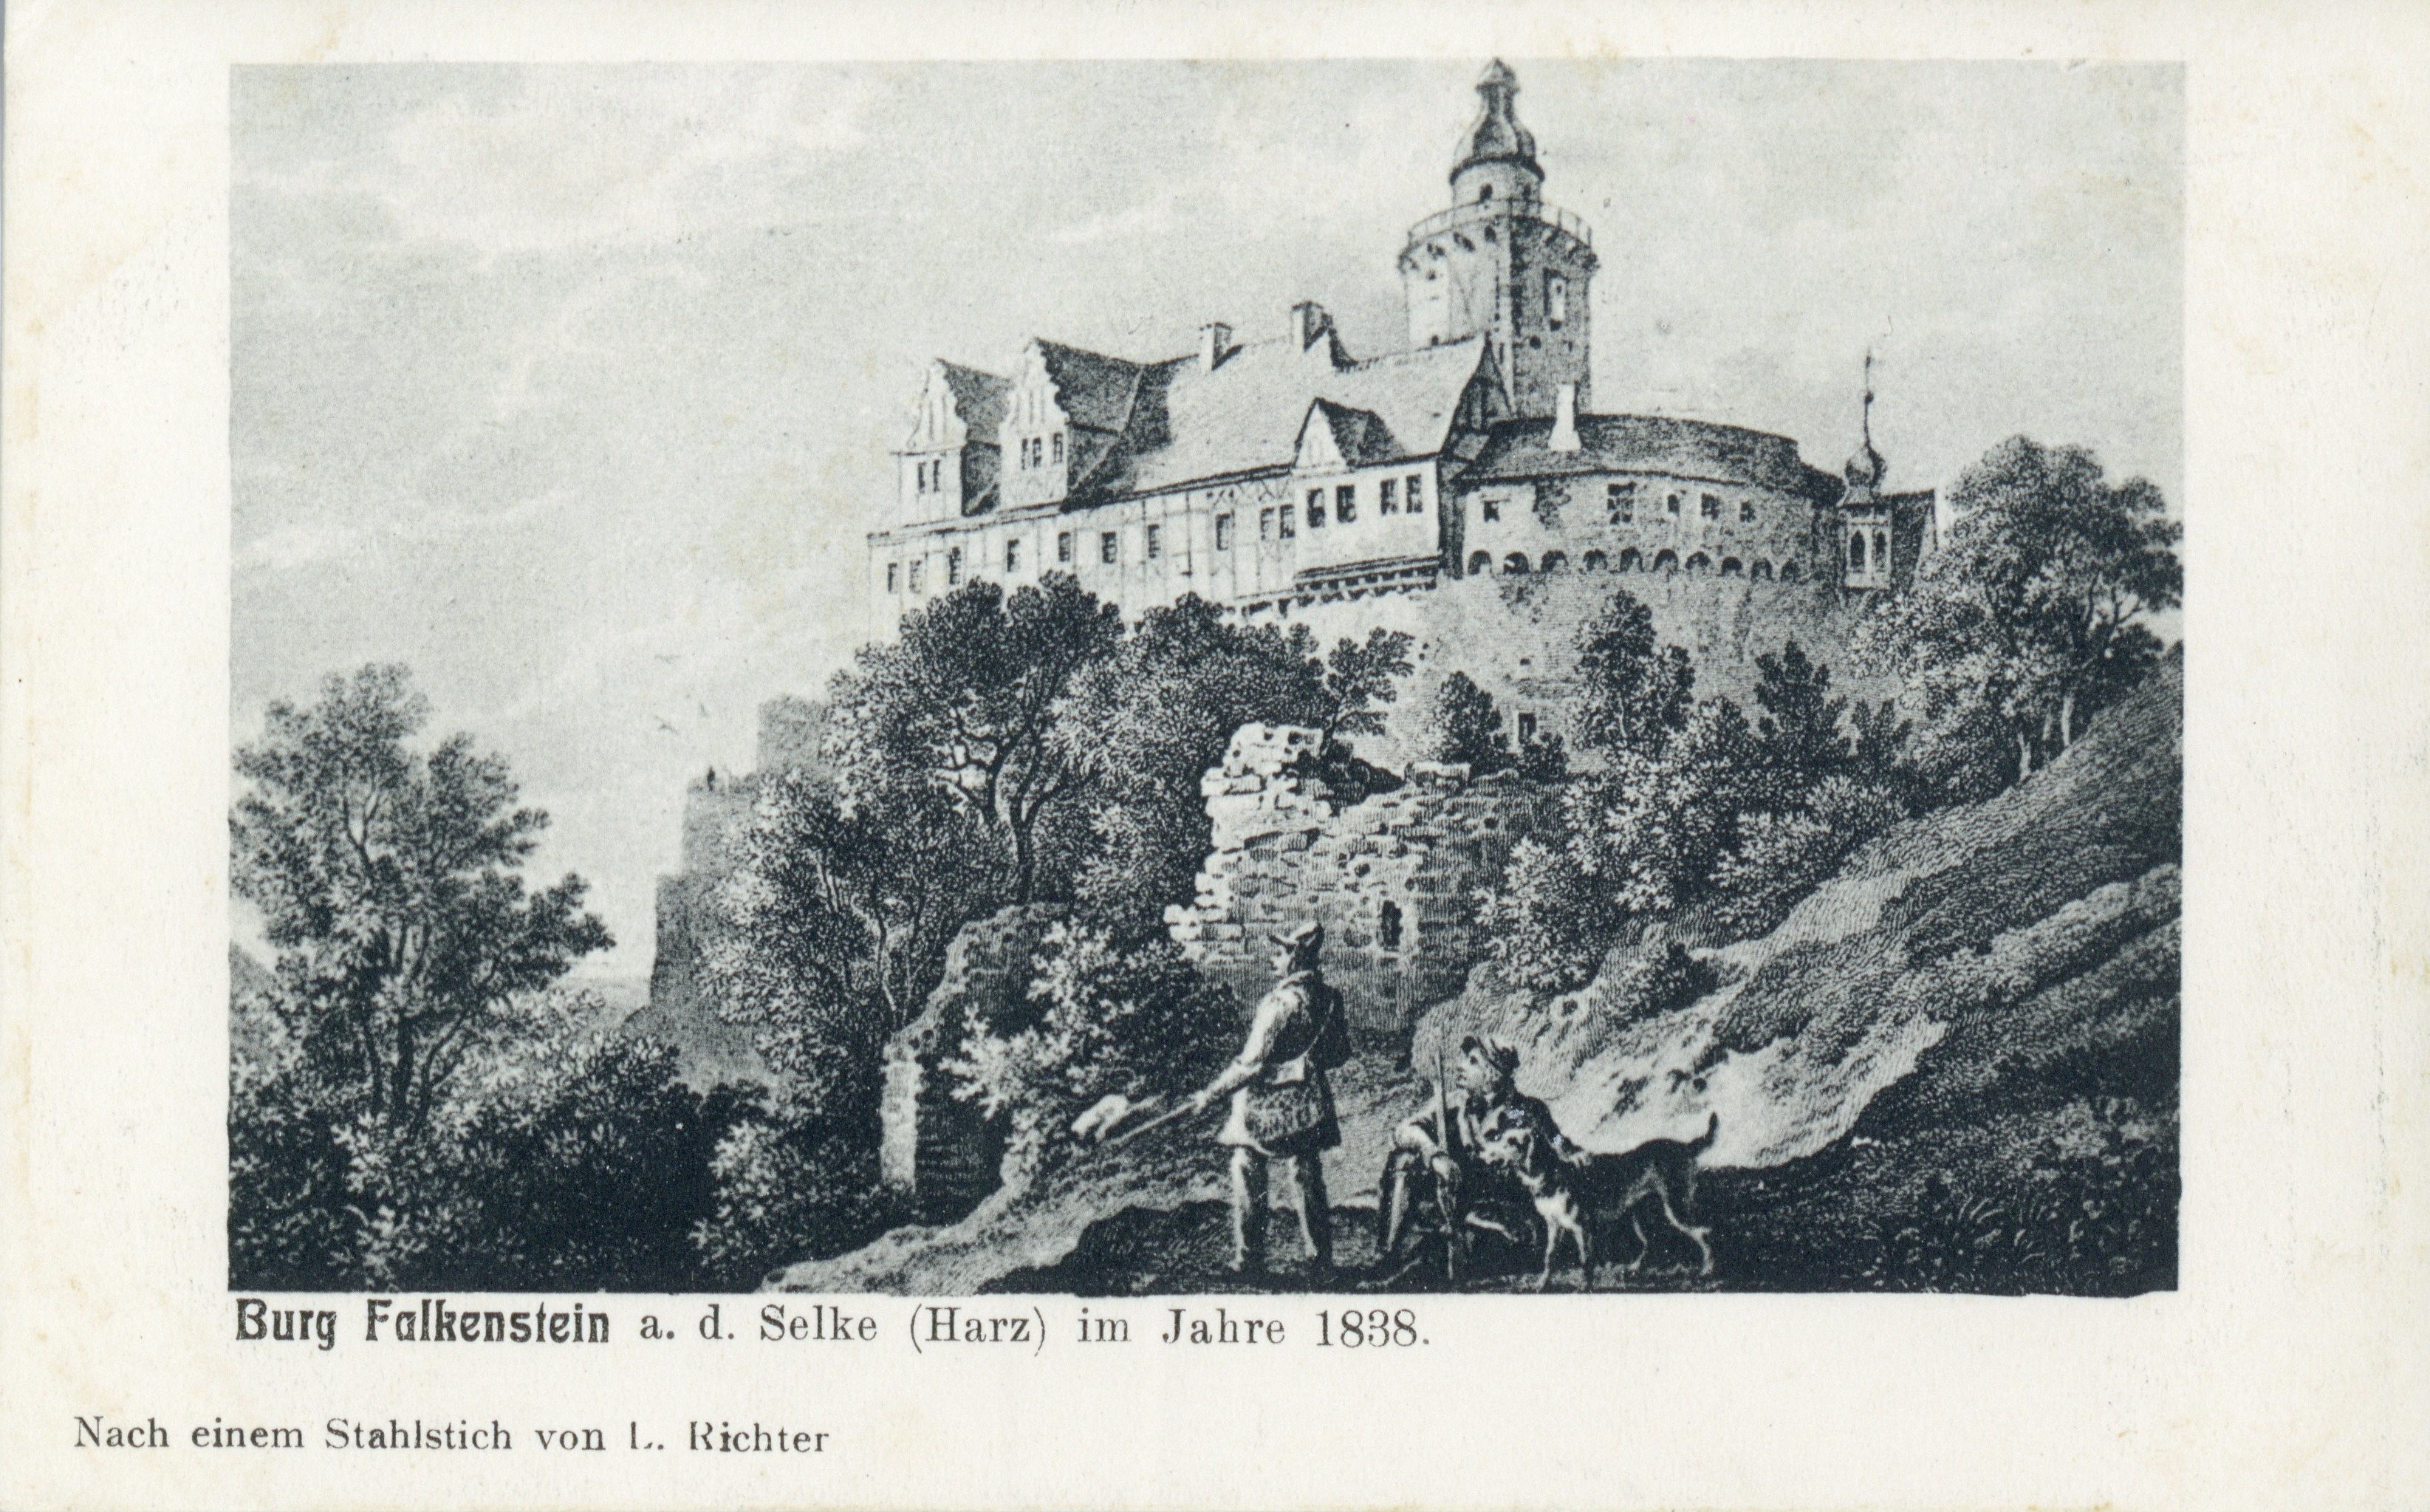 Ansichtskarte: Burg Falkenstein a. d. Selke (Harz) im Jahre 1838. (Kulturstiftung Sachsen-Anhalt CC BY-NC-SA)